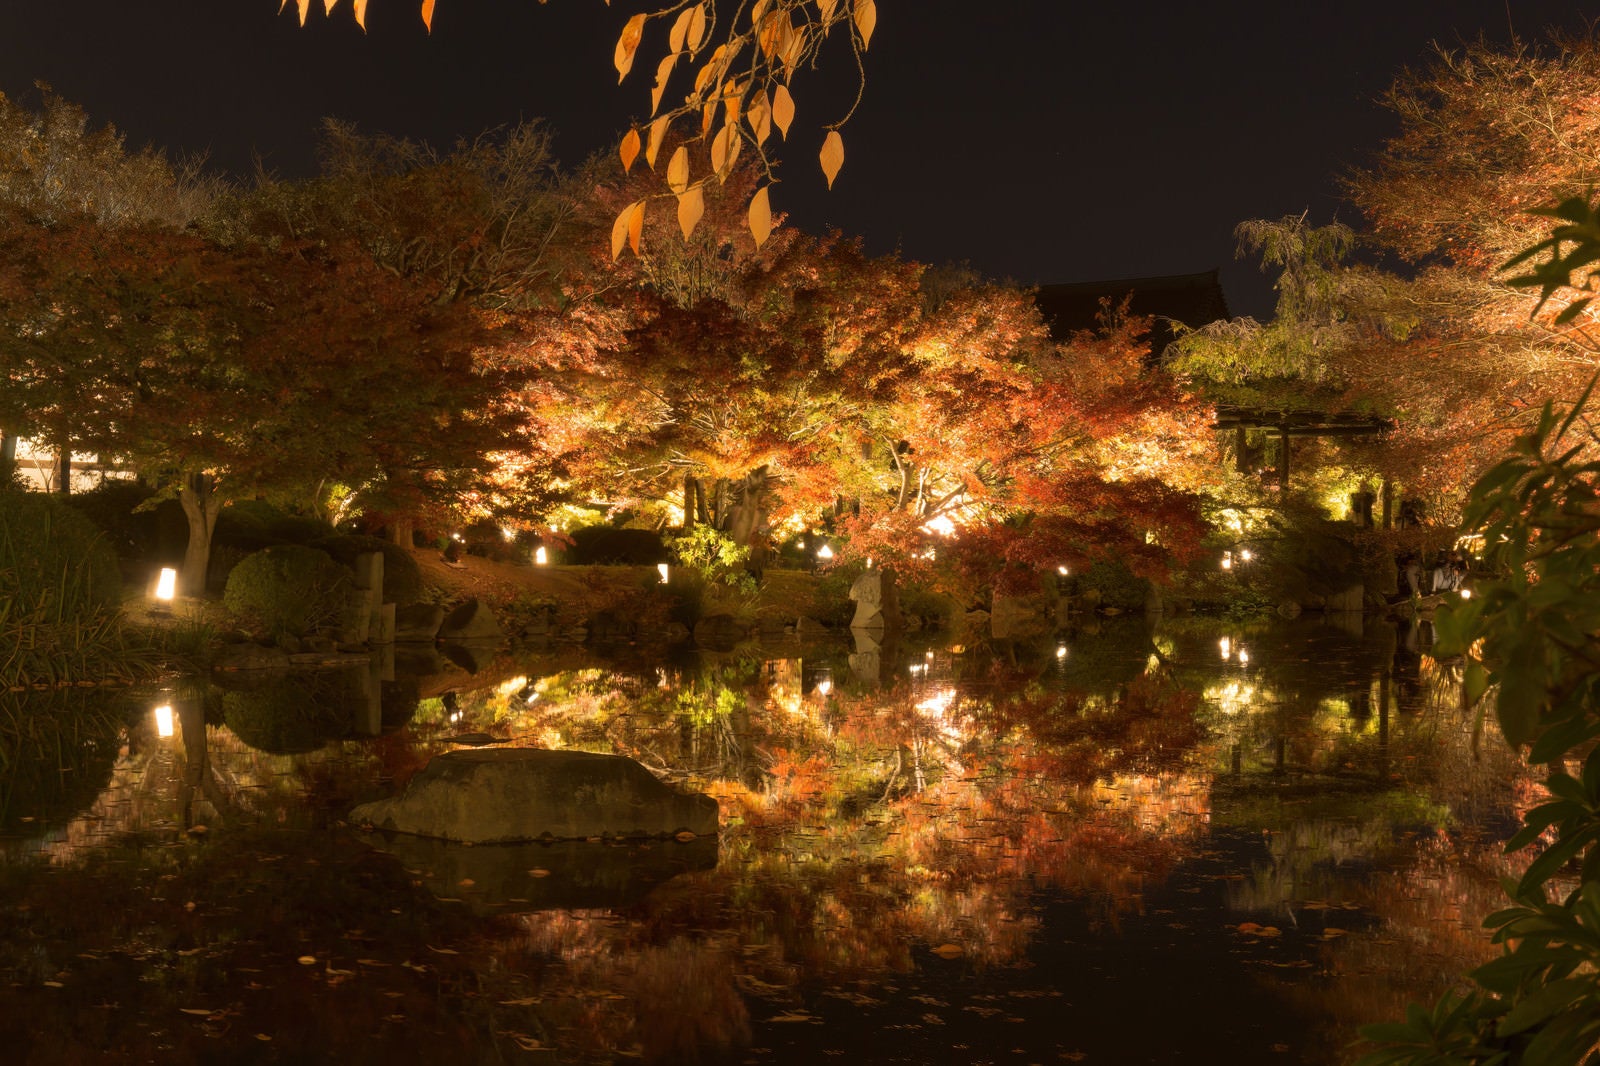 「ライトアップされて輝く紅葉した木々とそれを映す静かな池」の写真